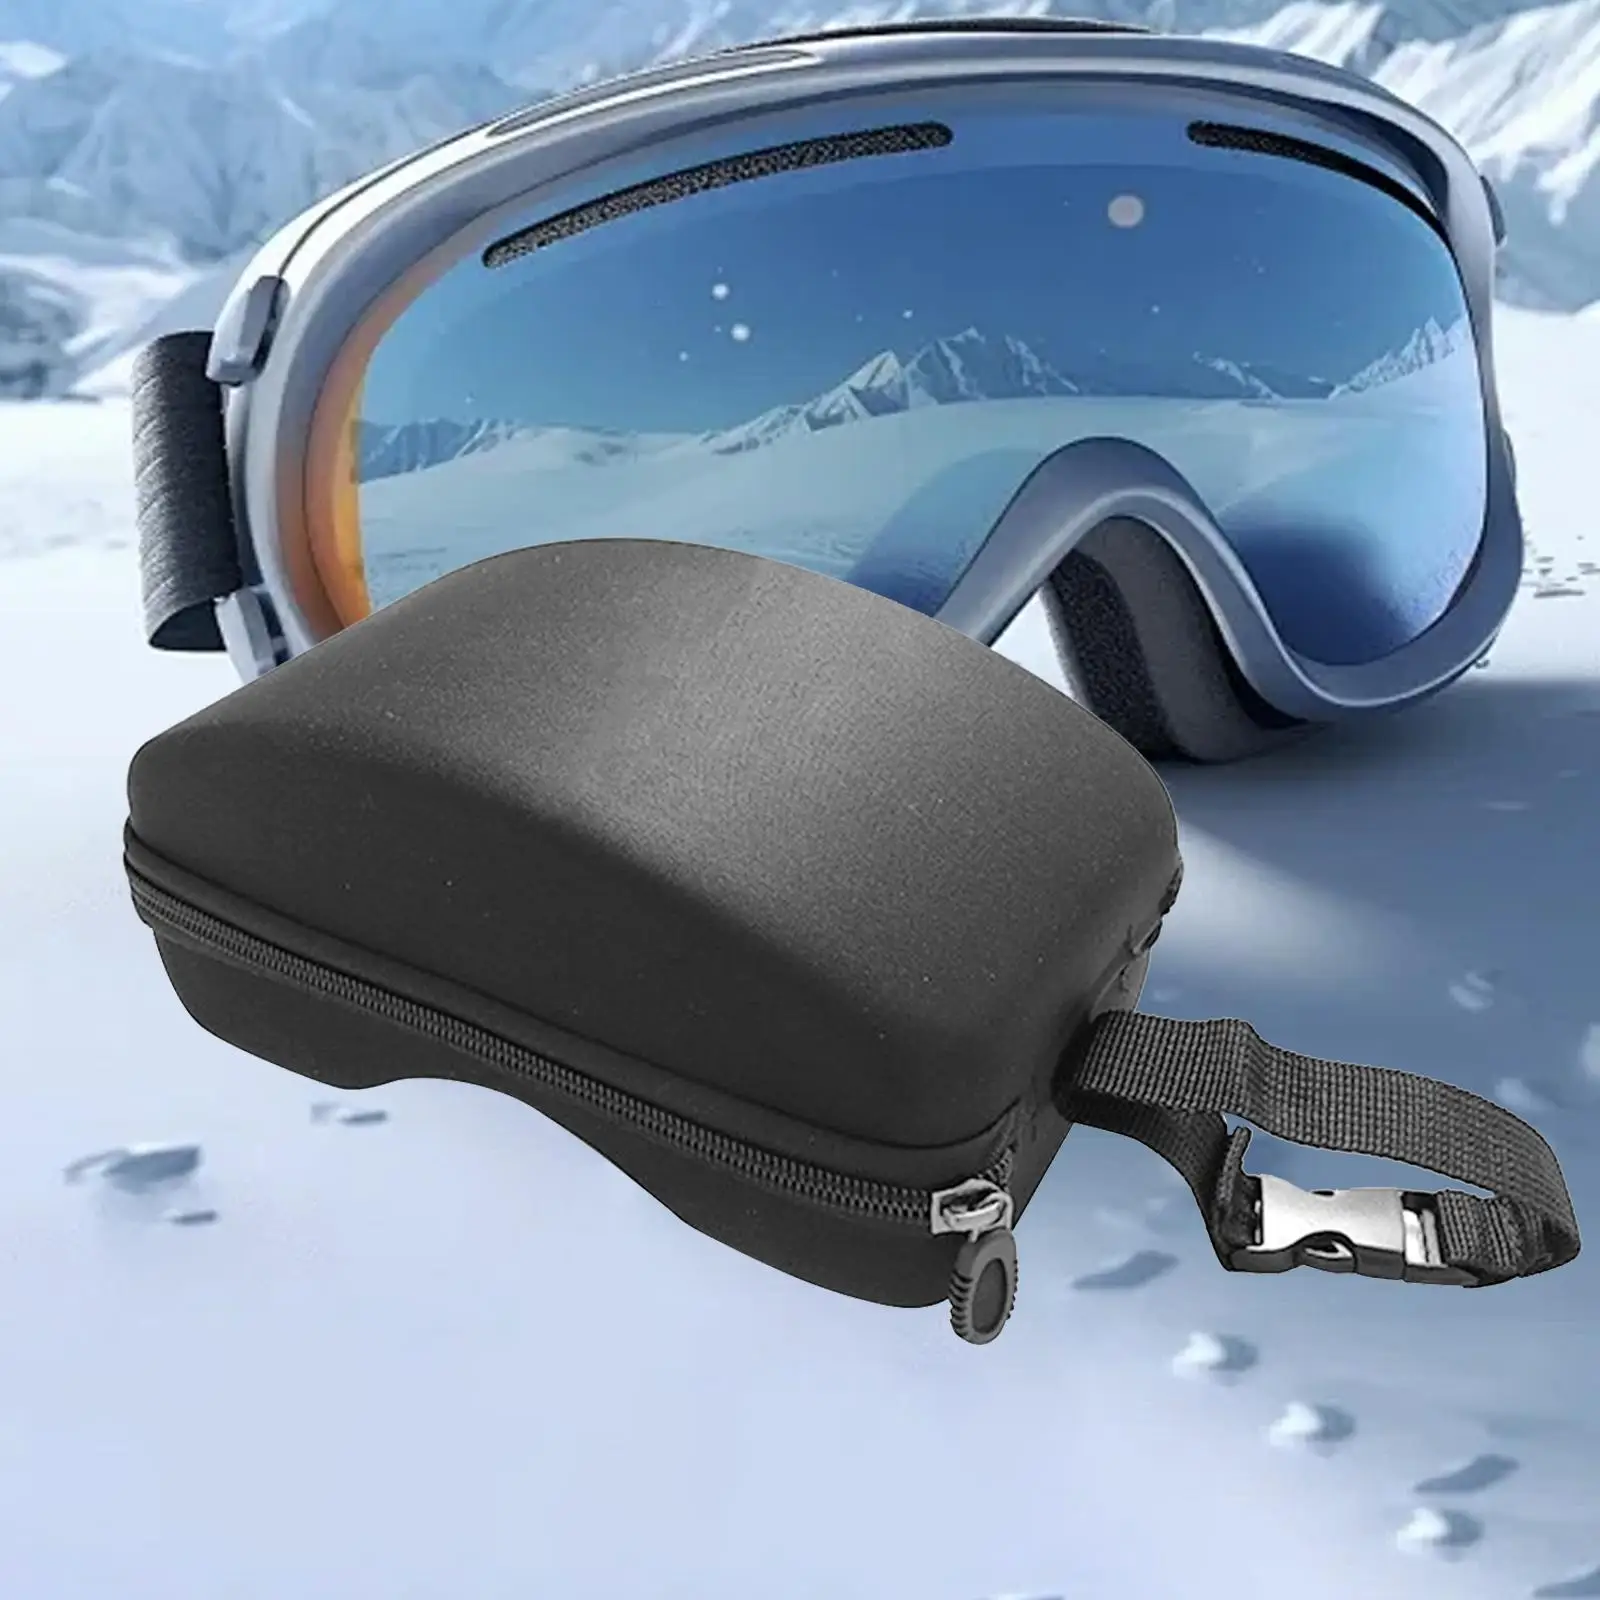 

Sport Glasses Holder, Snowboard Snow Goggles Box,Goggles Holder Ski Goggles Case Carrying for Flying Goggles,Swimming Goggles